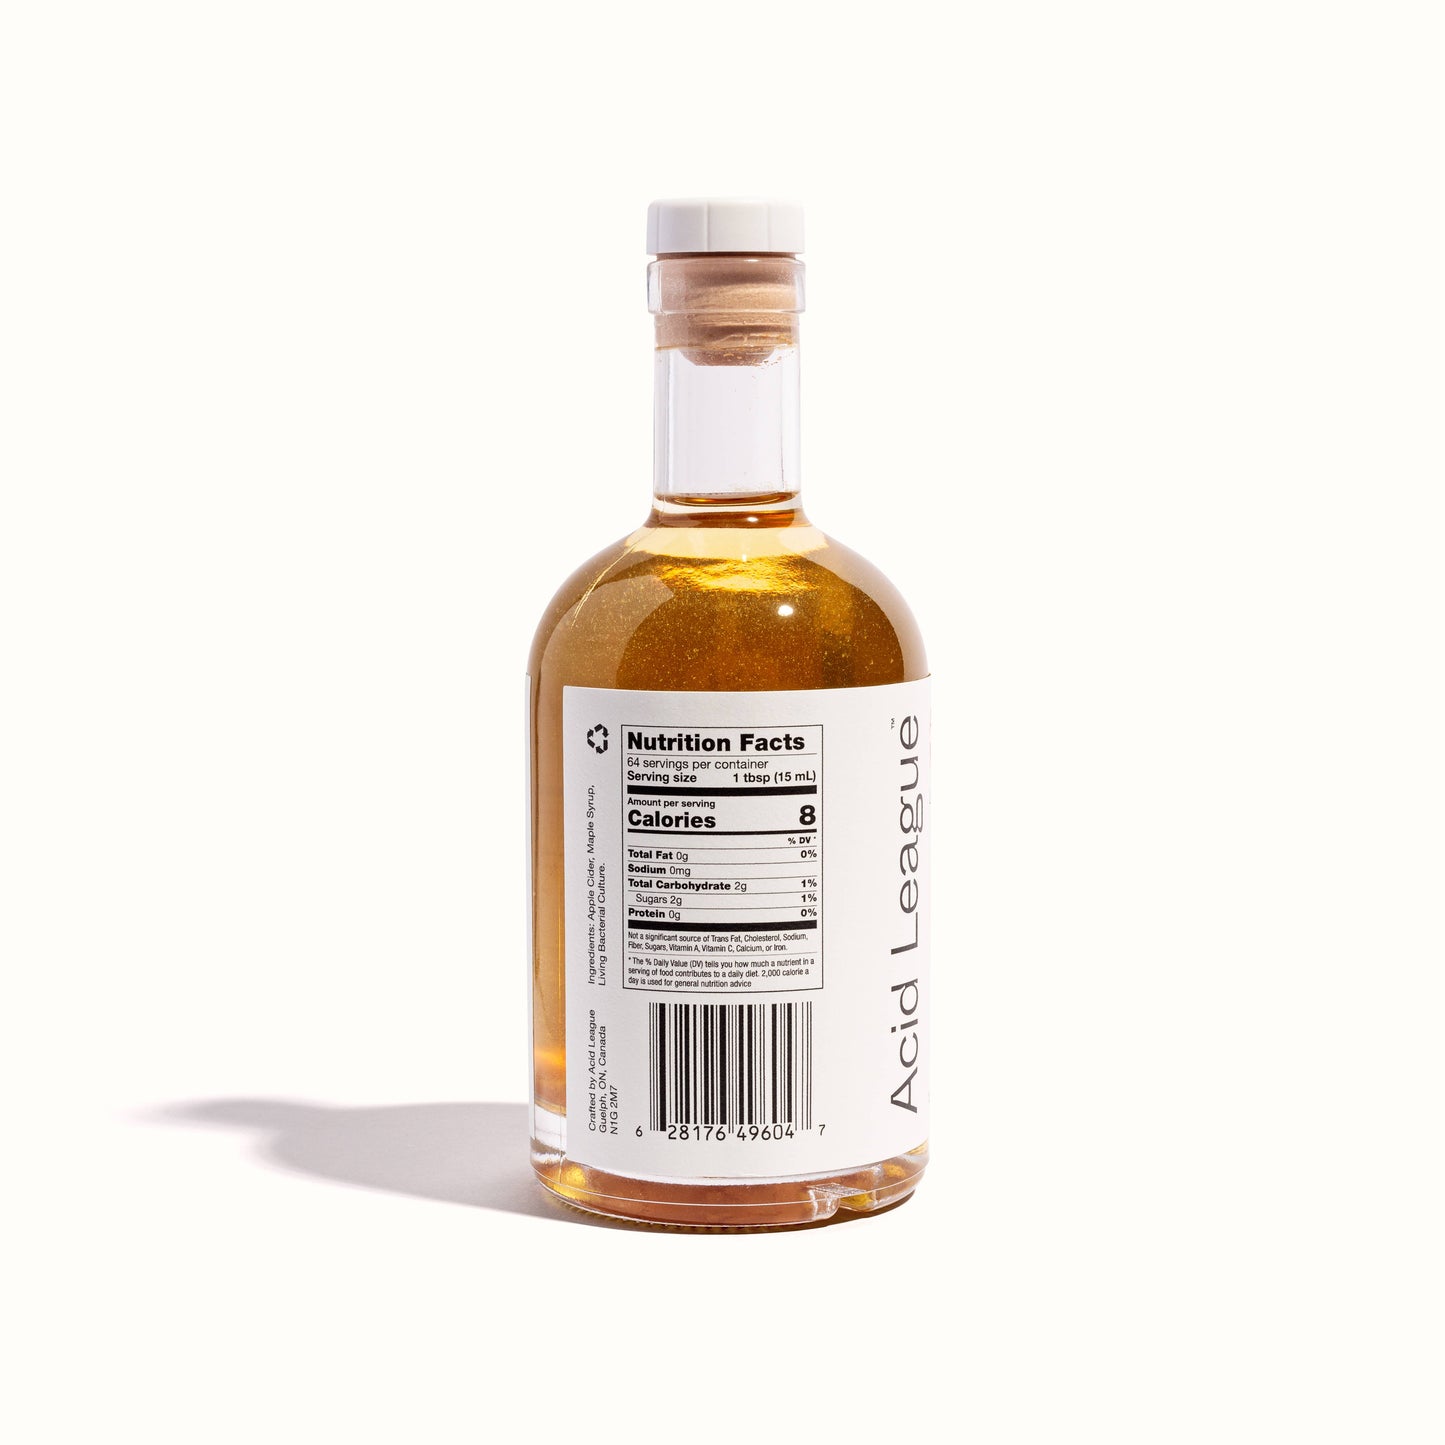 Apple Cider Maple Living Vinegar